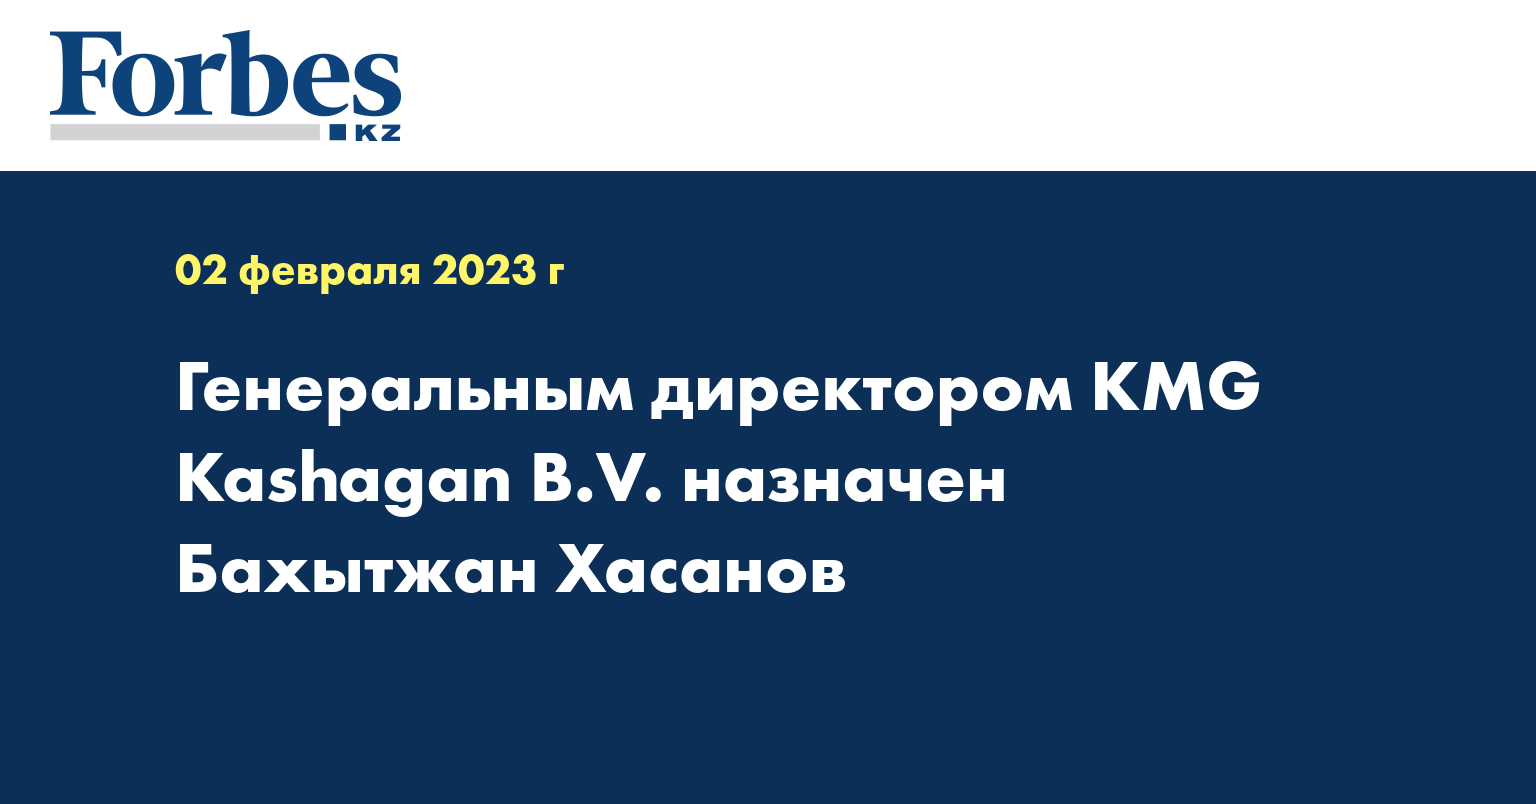 Генеральным директором KMG Kashagan B.V. назначен Бахытжан Хасанов